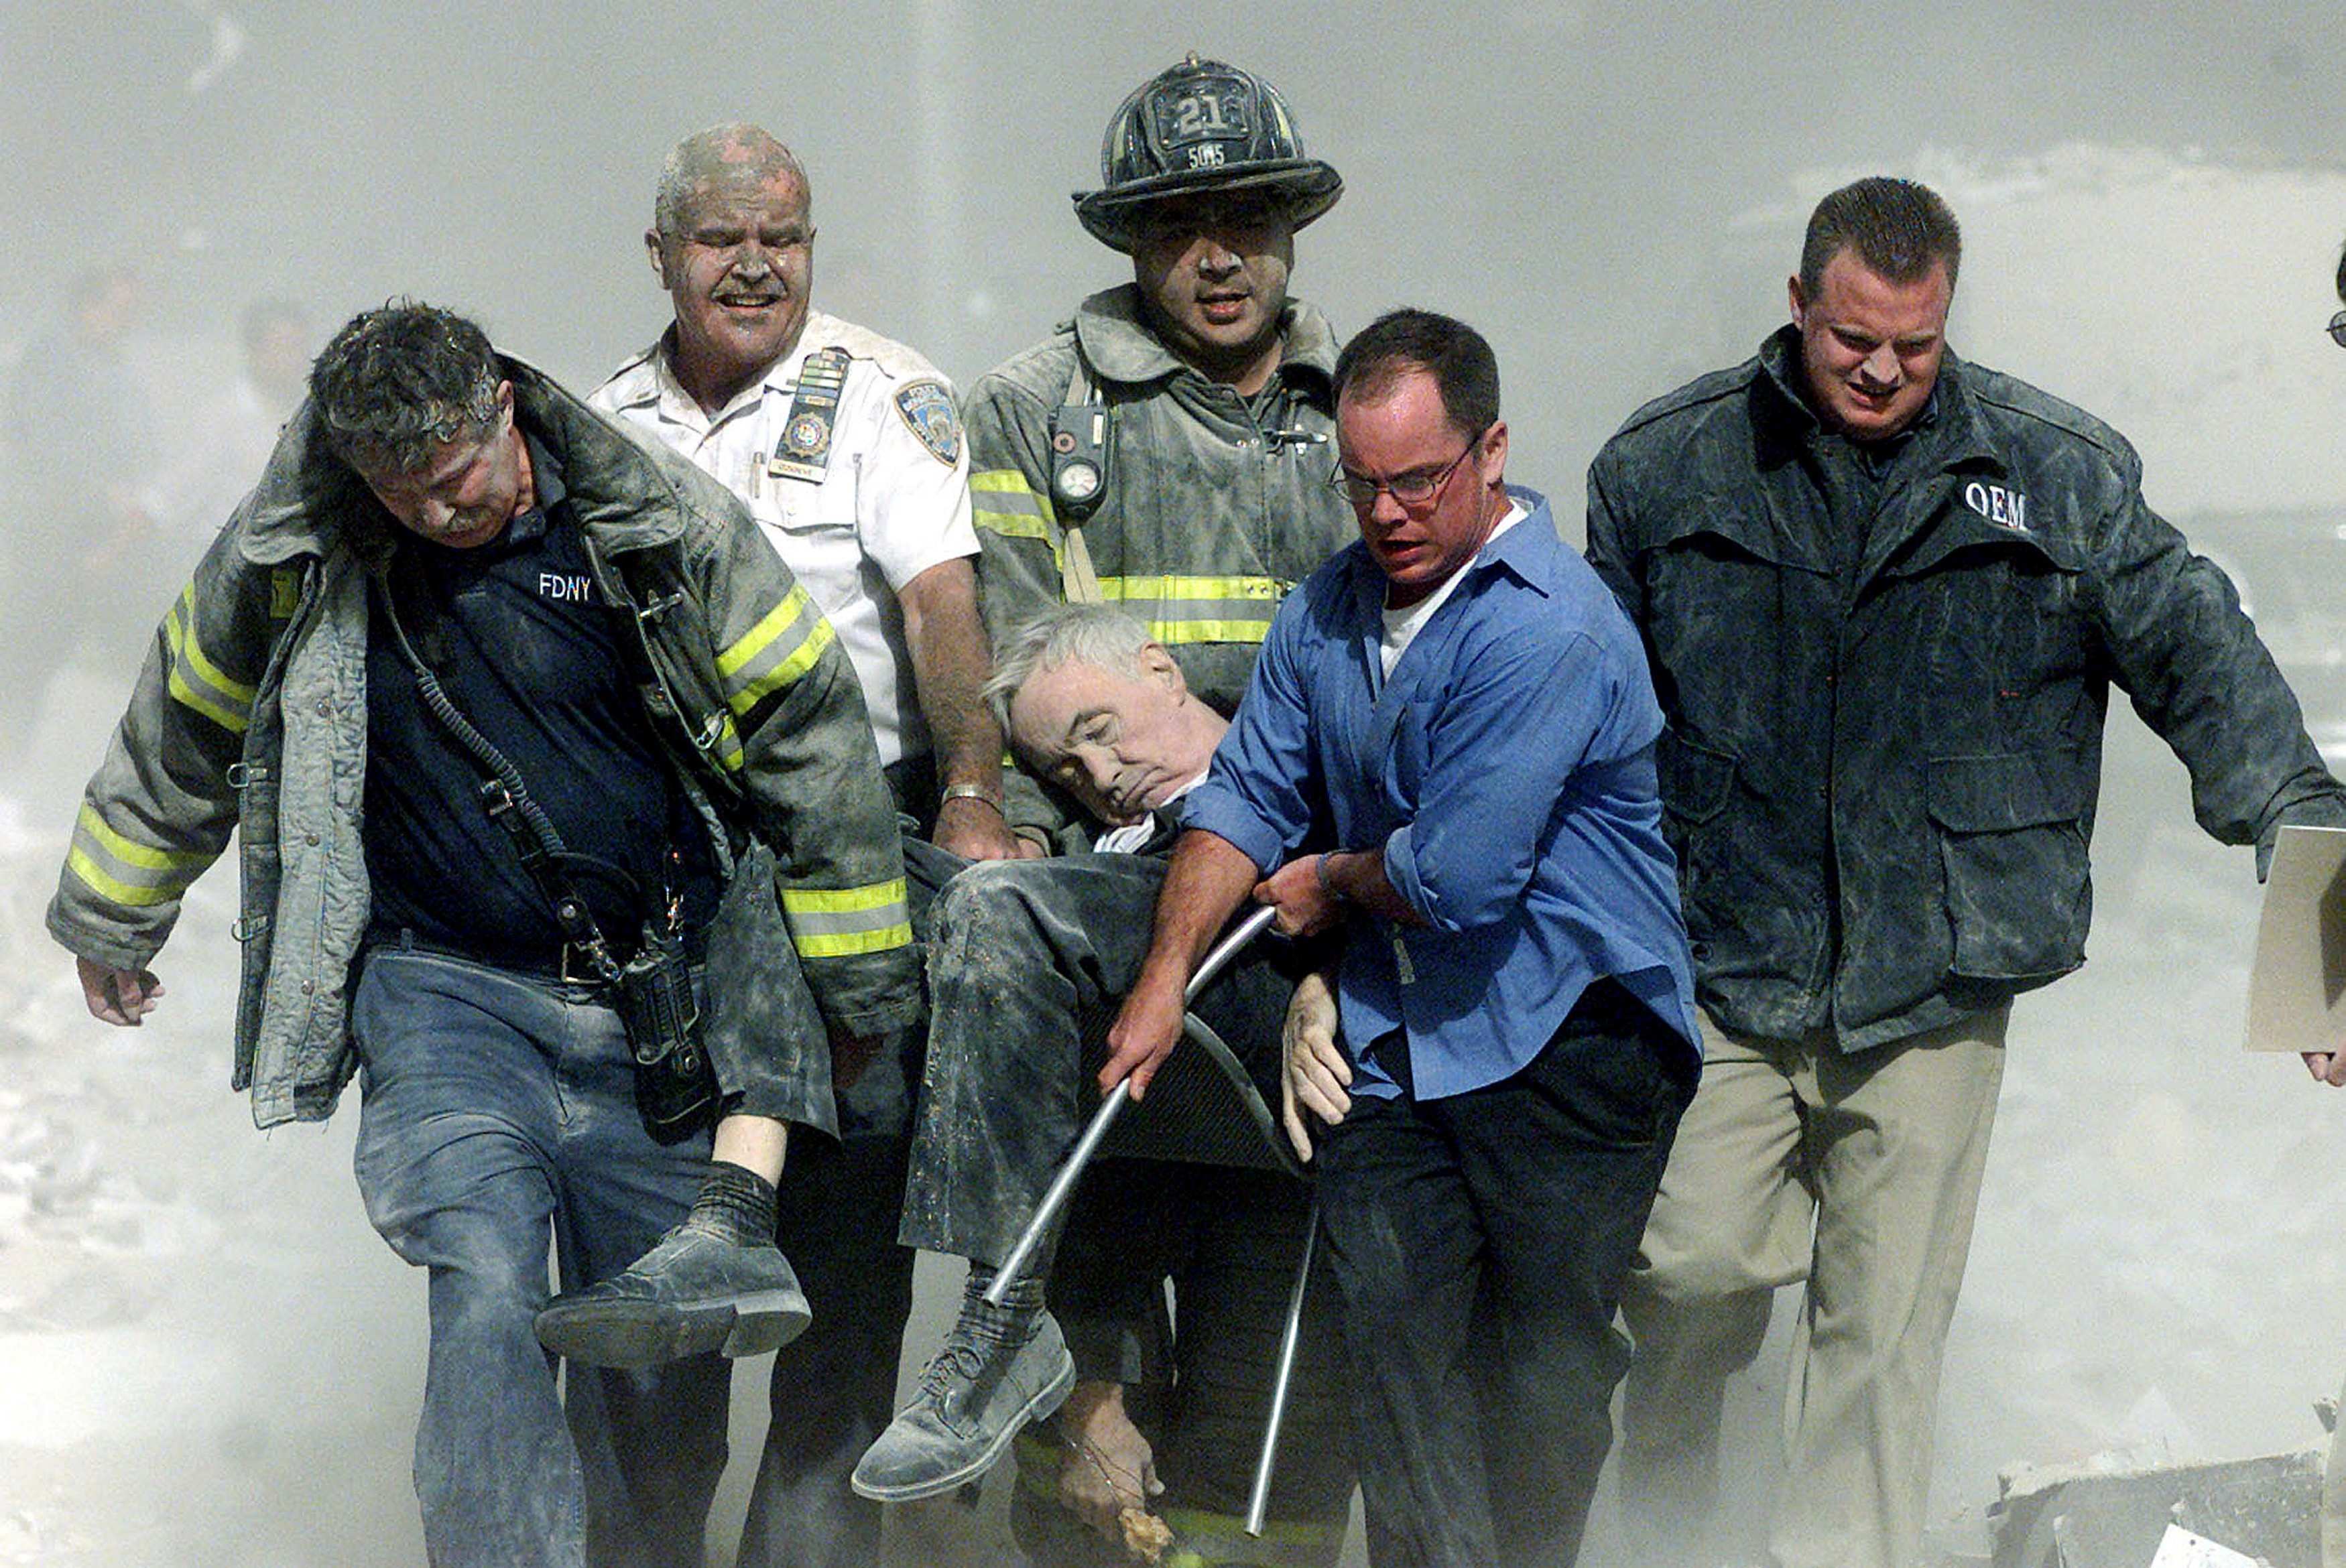 Количество жертв теракта 11 сентября. Спасатели 11 сентября 2001. Теракт в Нью-Йорке 11 сентября 2001. Башни Близнецы 11 сентября жертвы. Число погибших 11 сентября 2001.